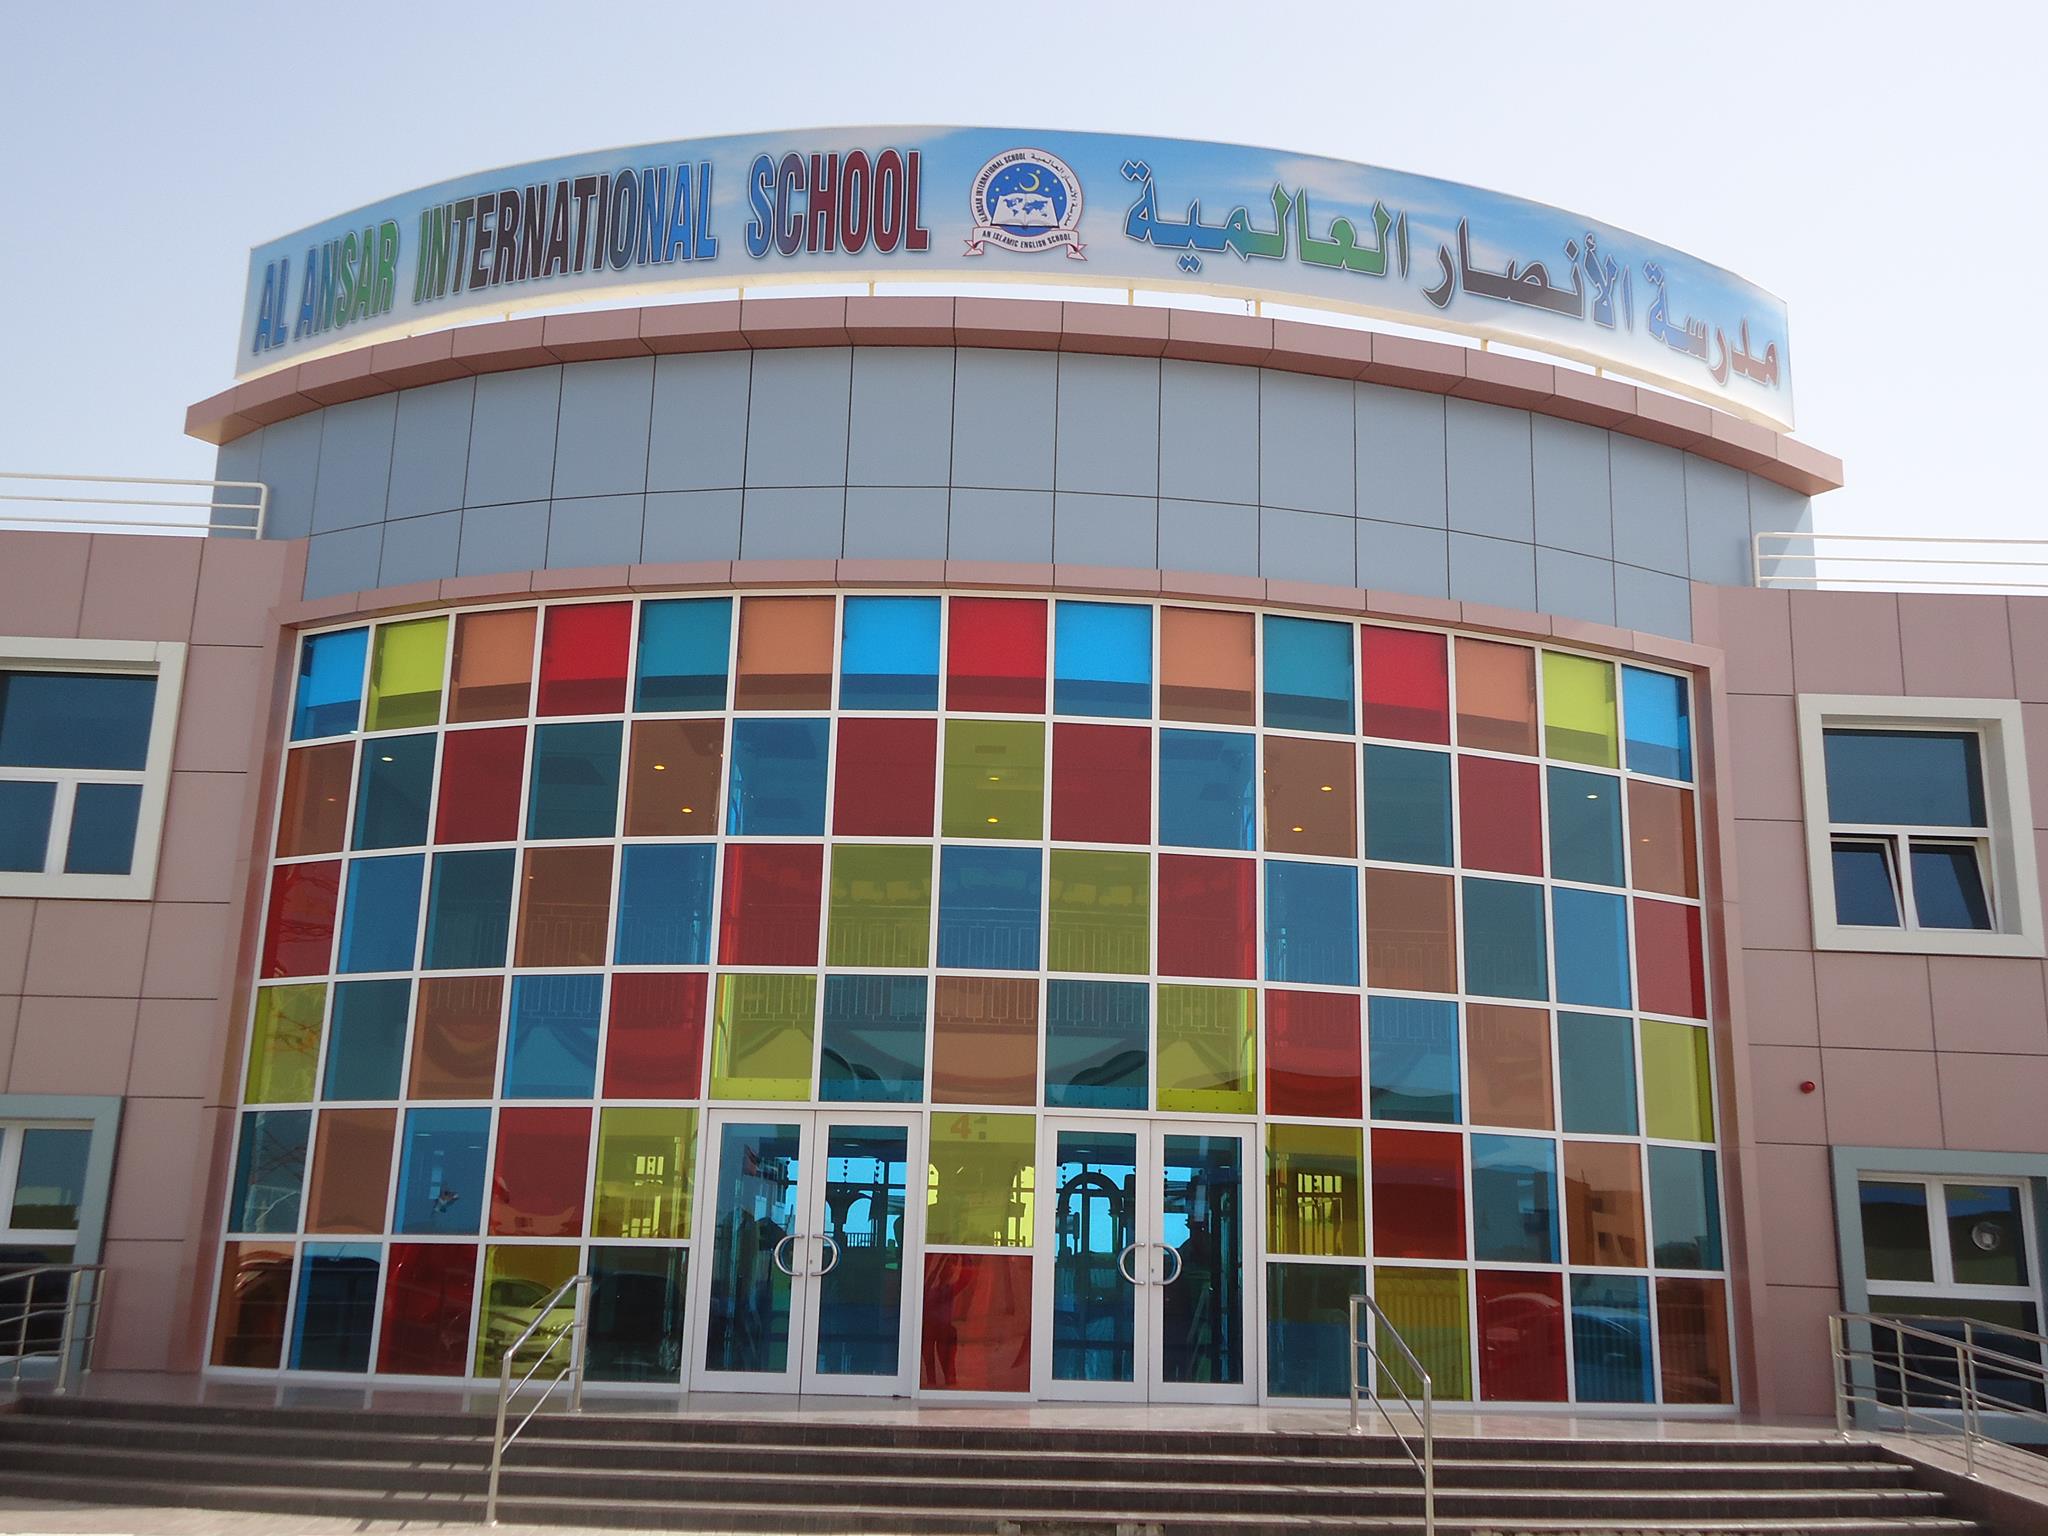 Al Ansar International School